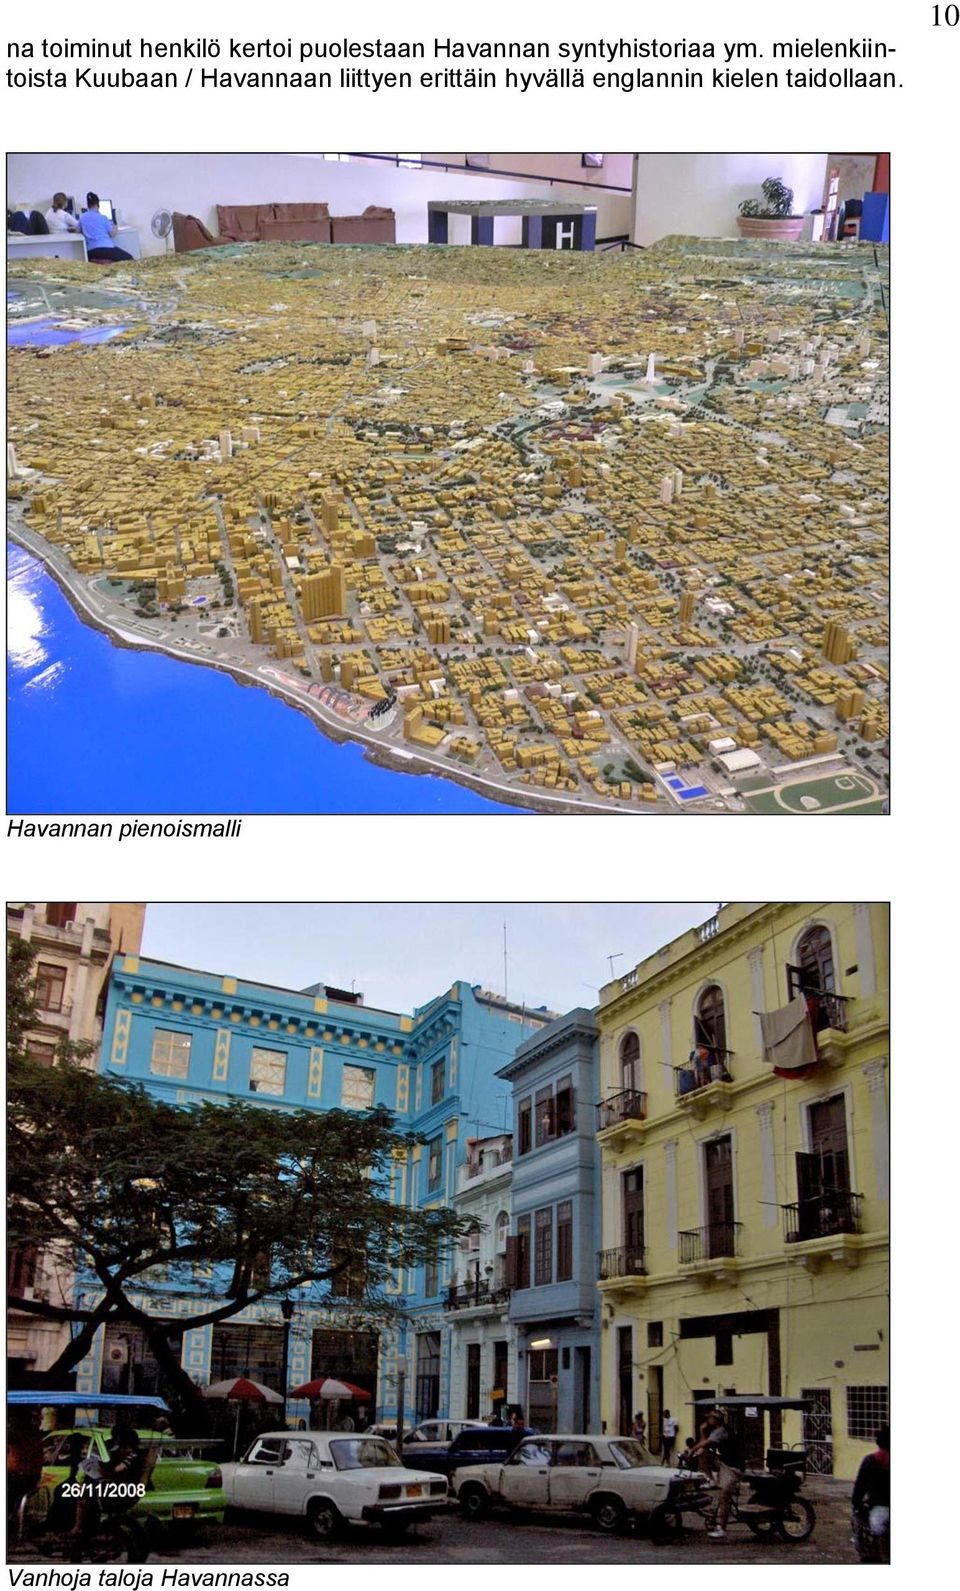 mielenkiintoista Kuubaan / Havannaan liittyen